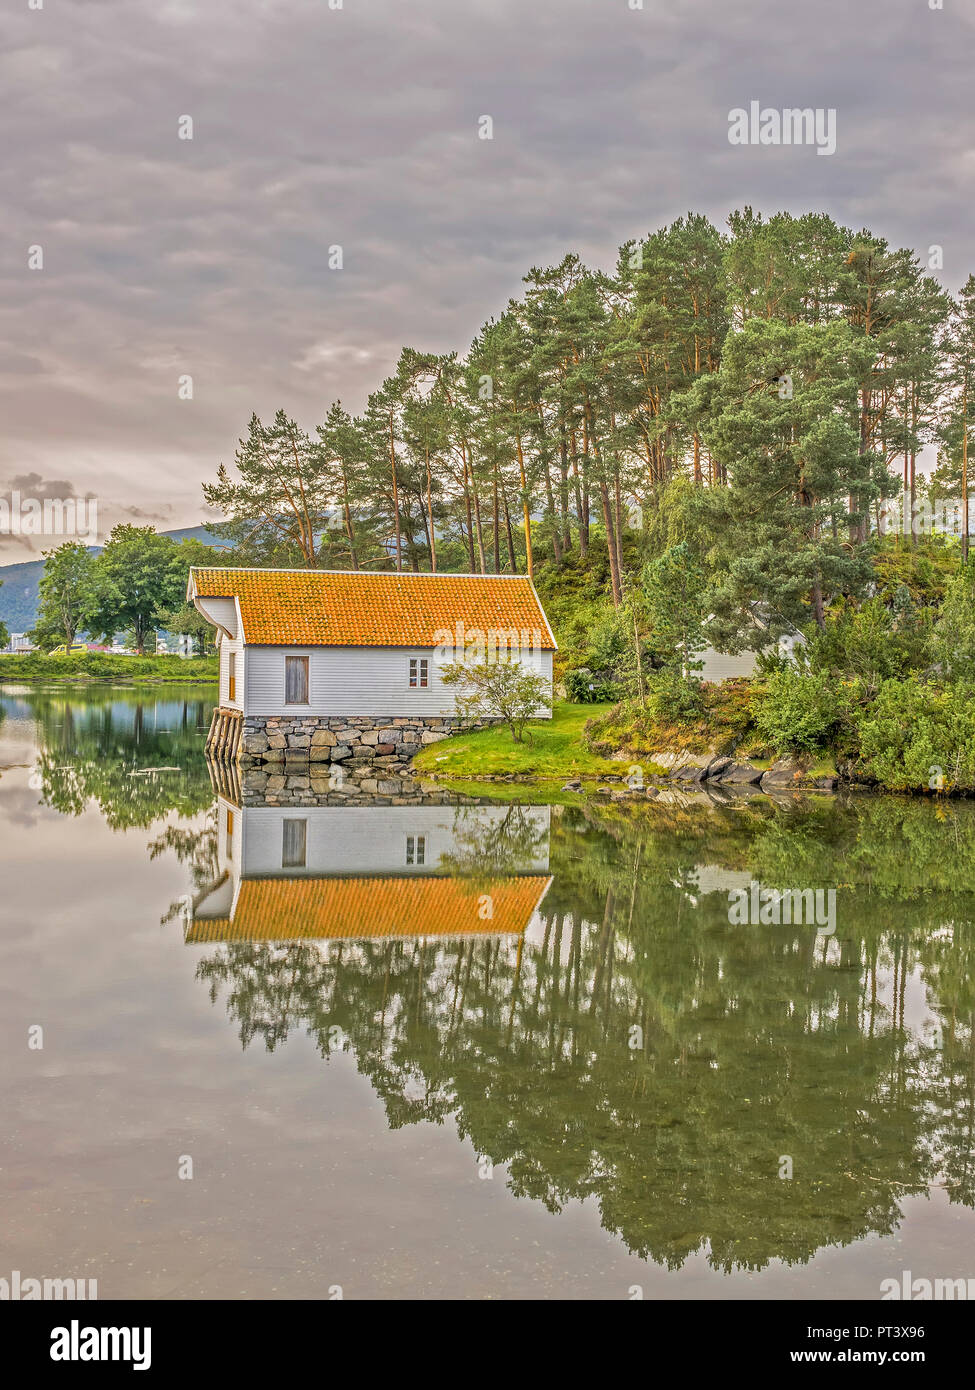 Seahouse de Katavagen Sunnmore, Open Air Museum, Alesund, Norvège Banque D'Images